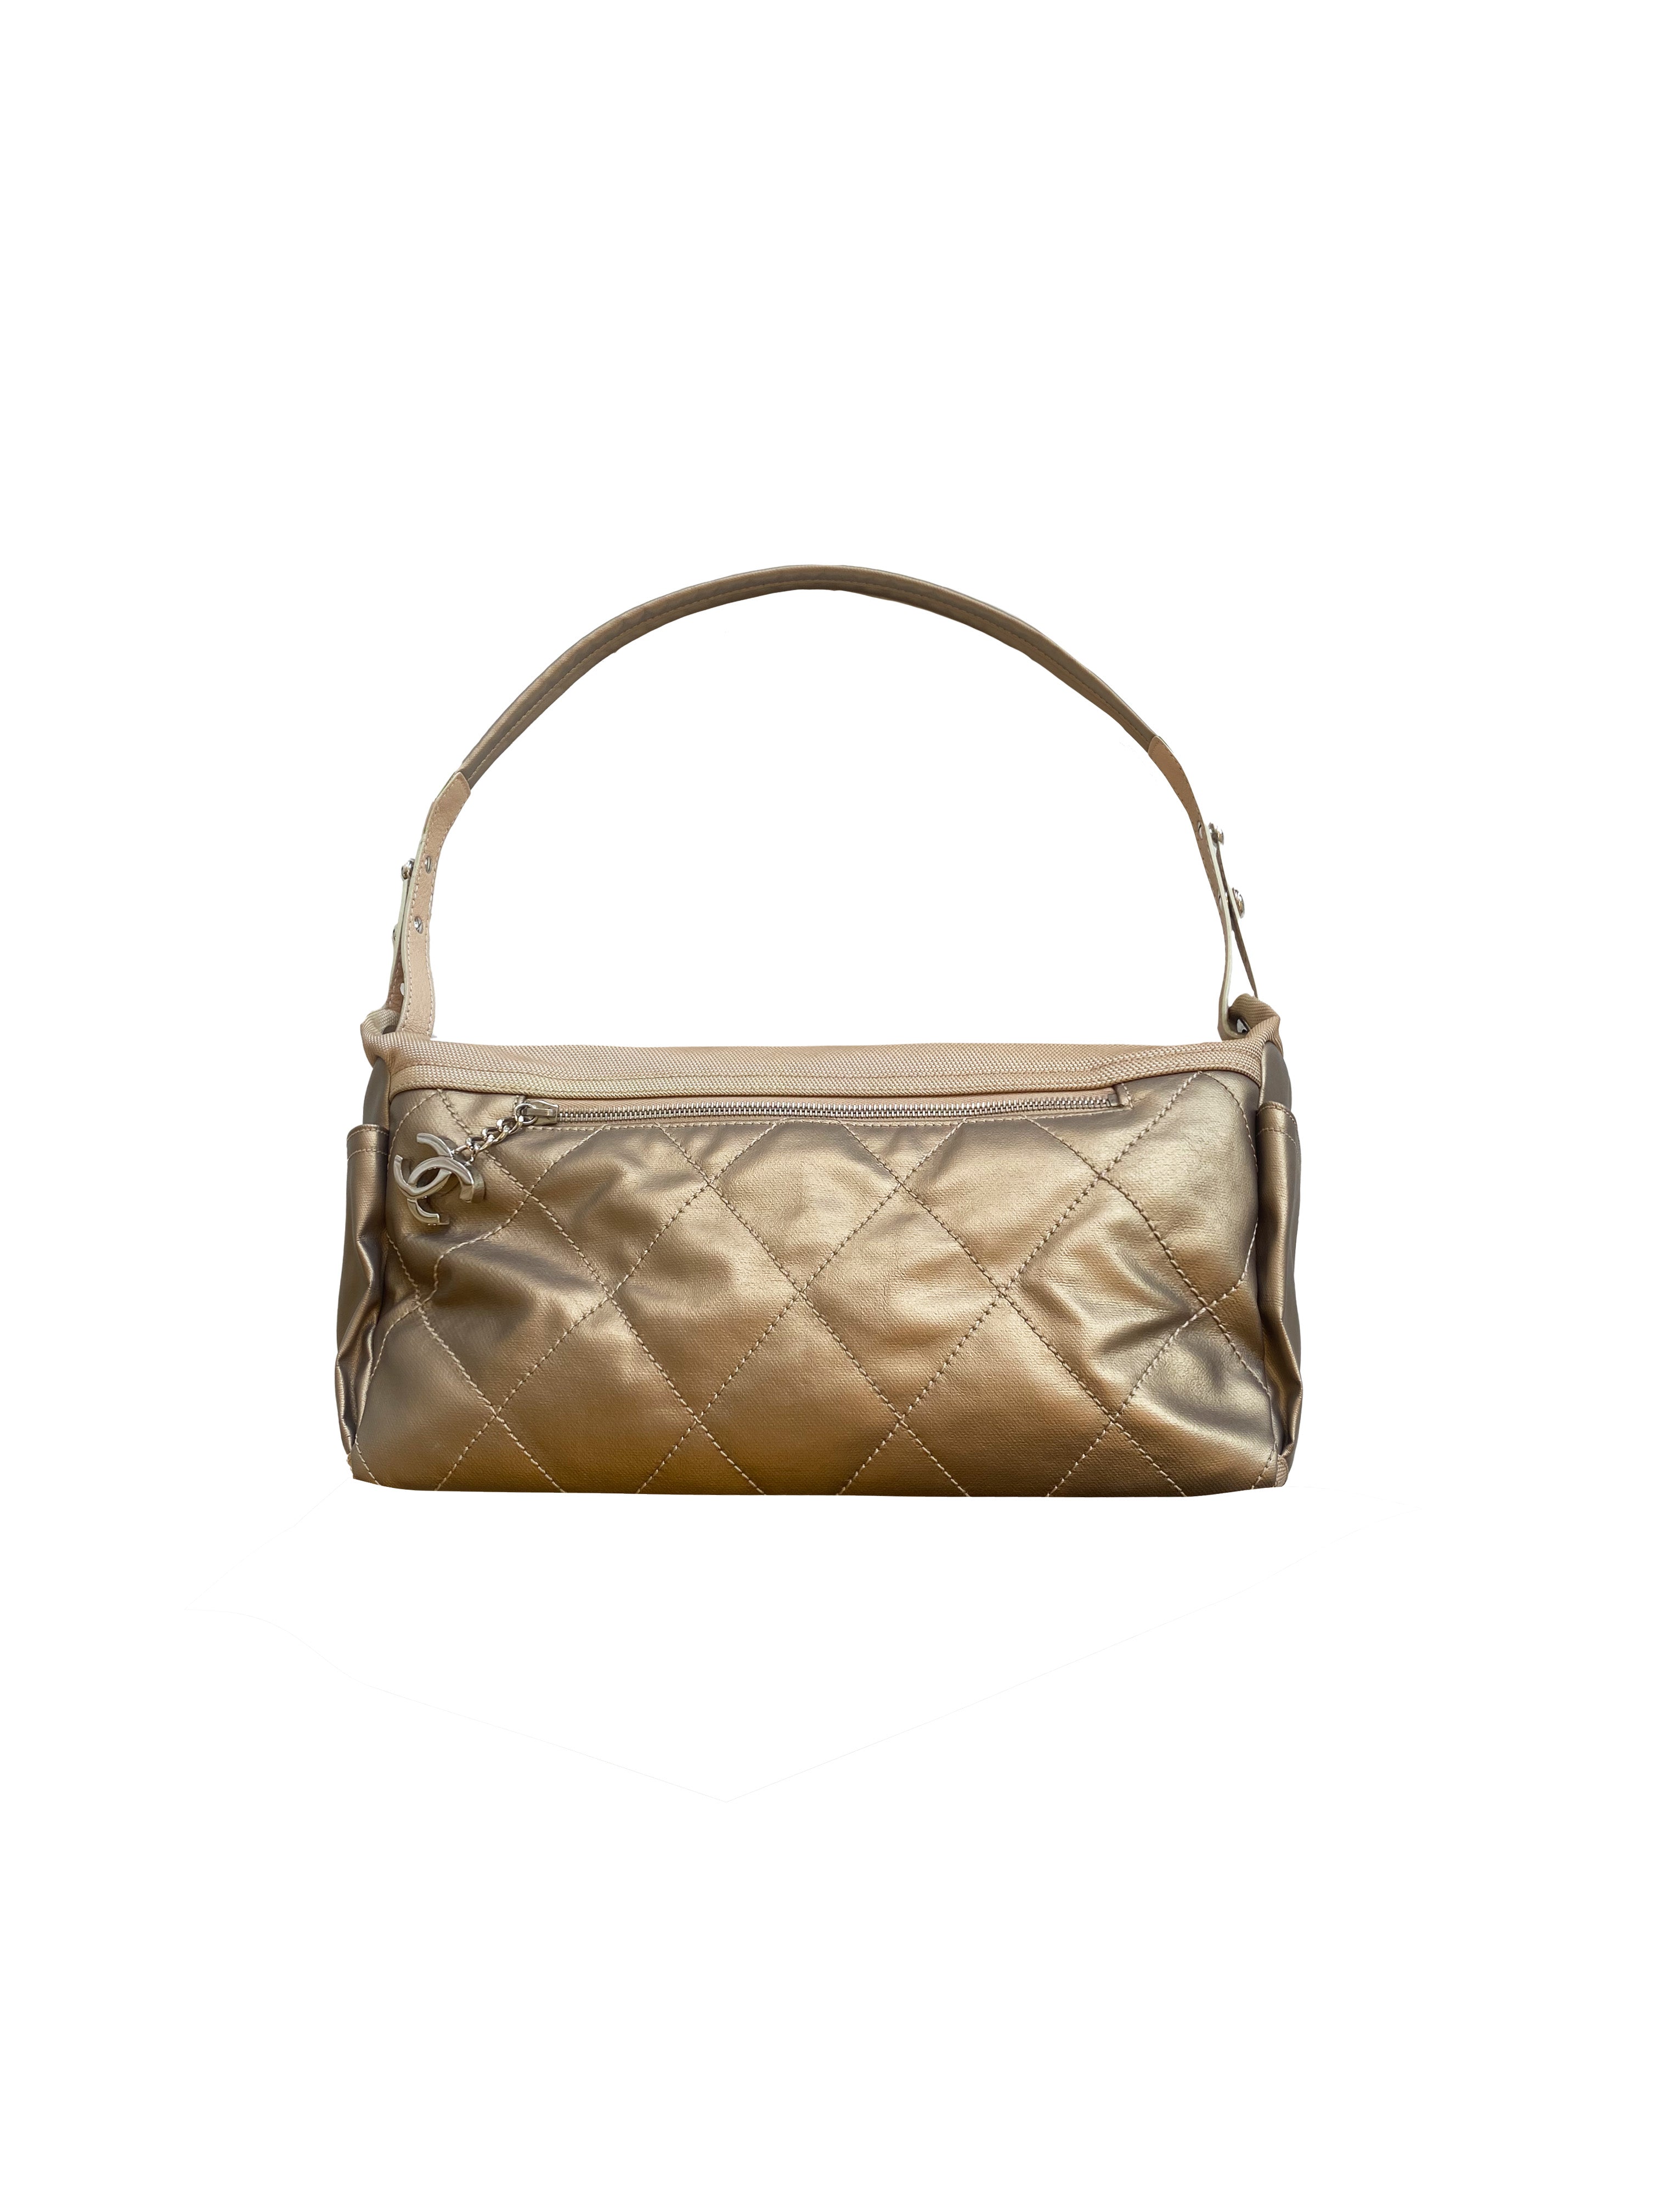 Chanel 2006 Bronze Large Shoulder Bag